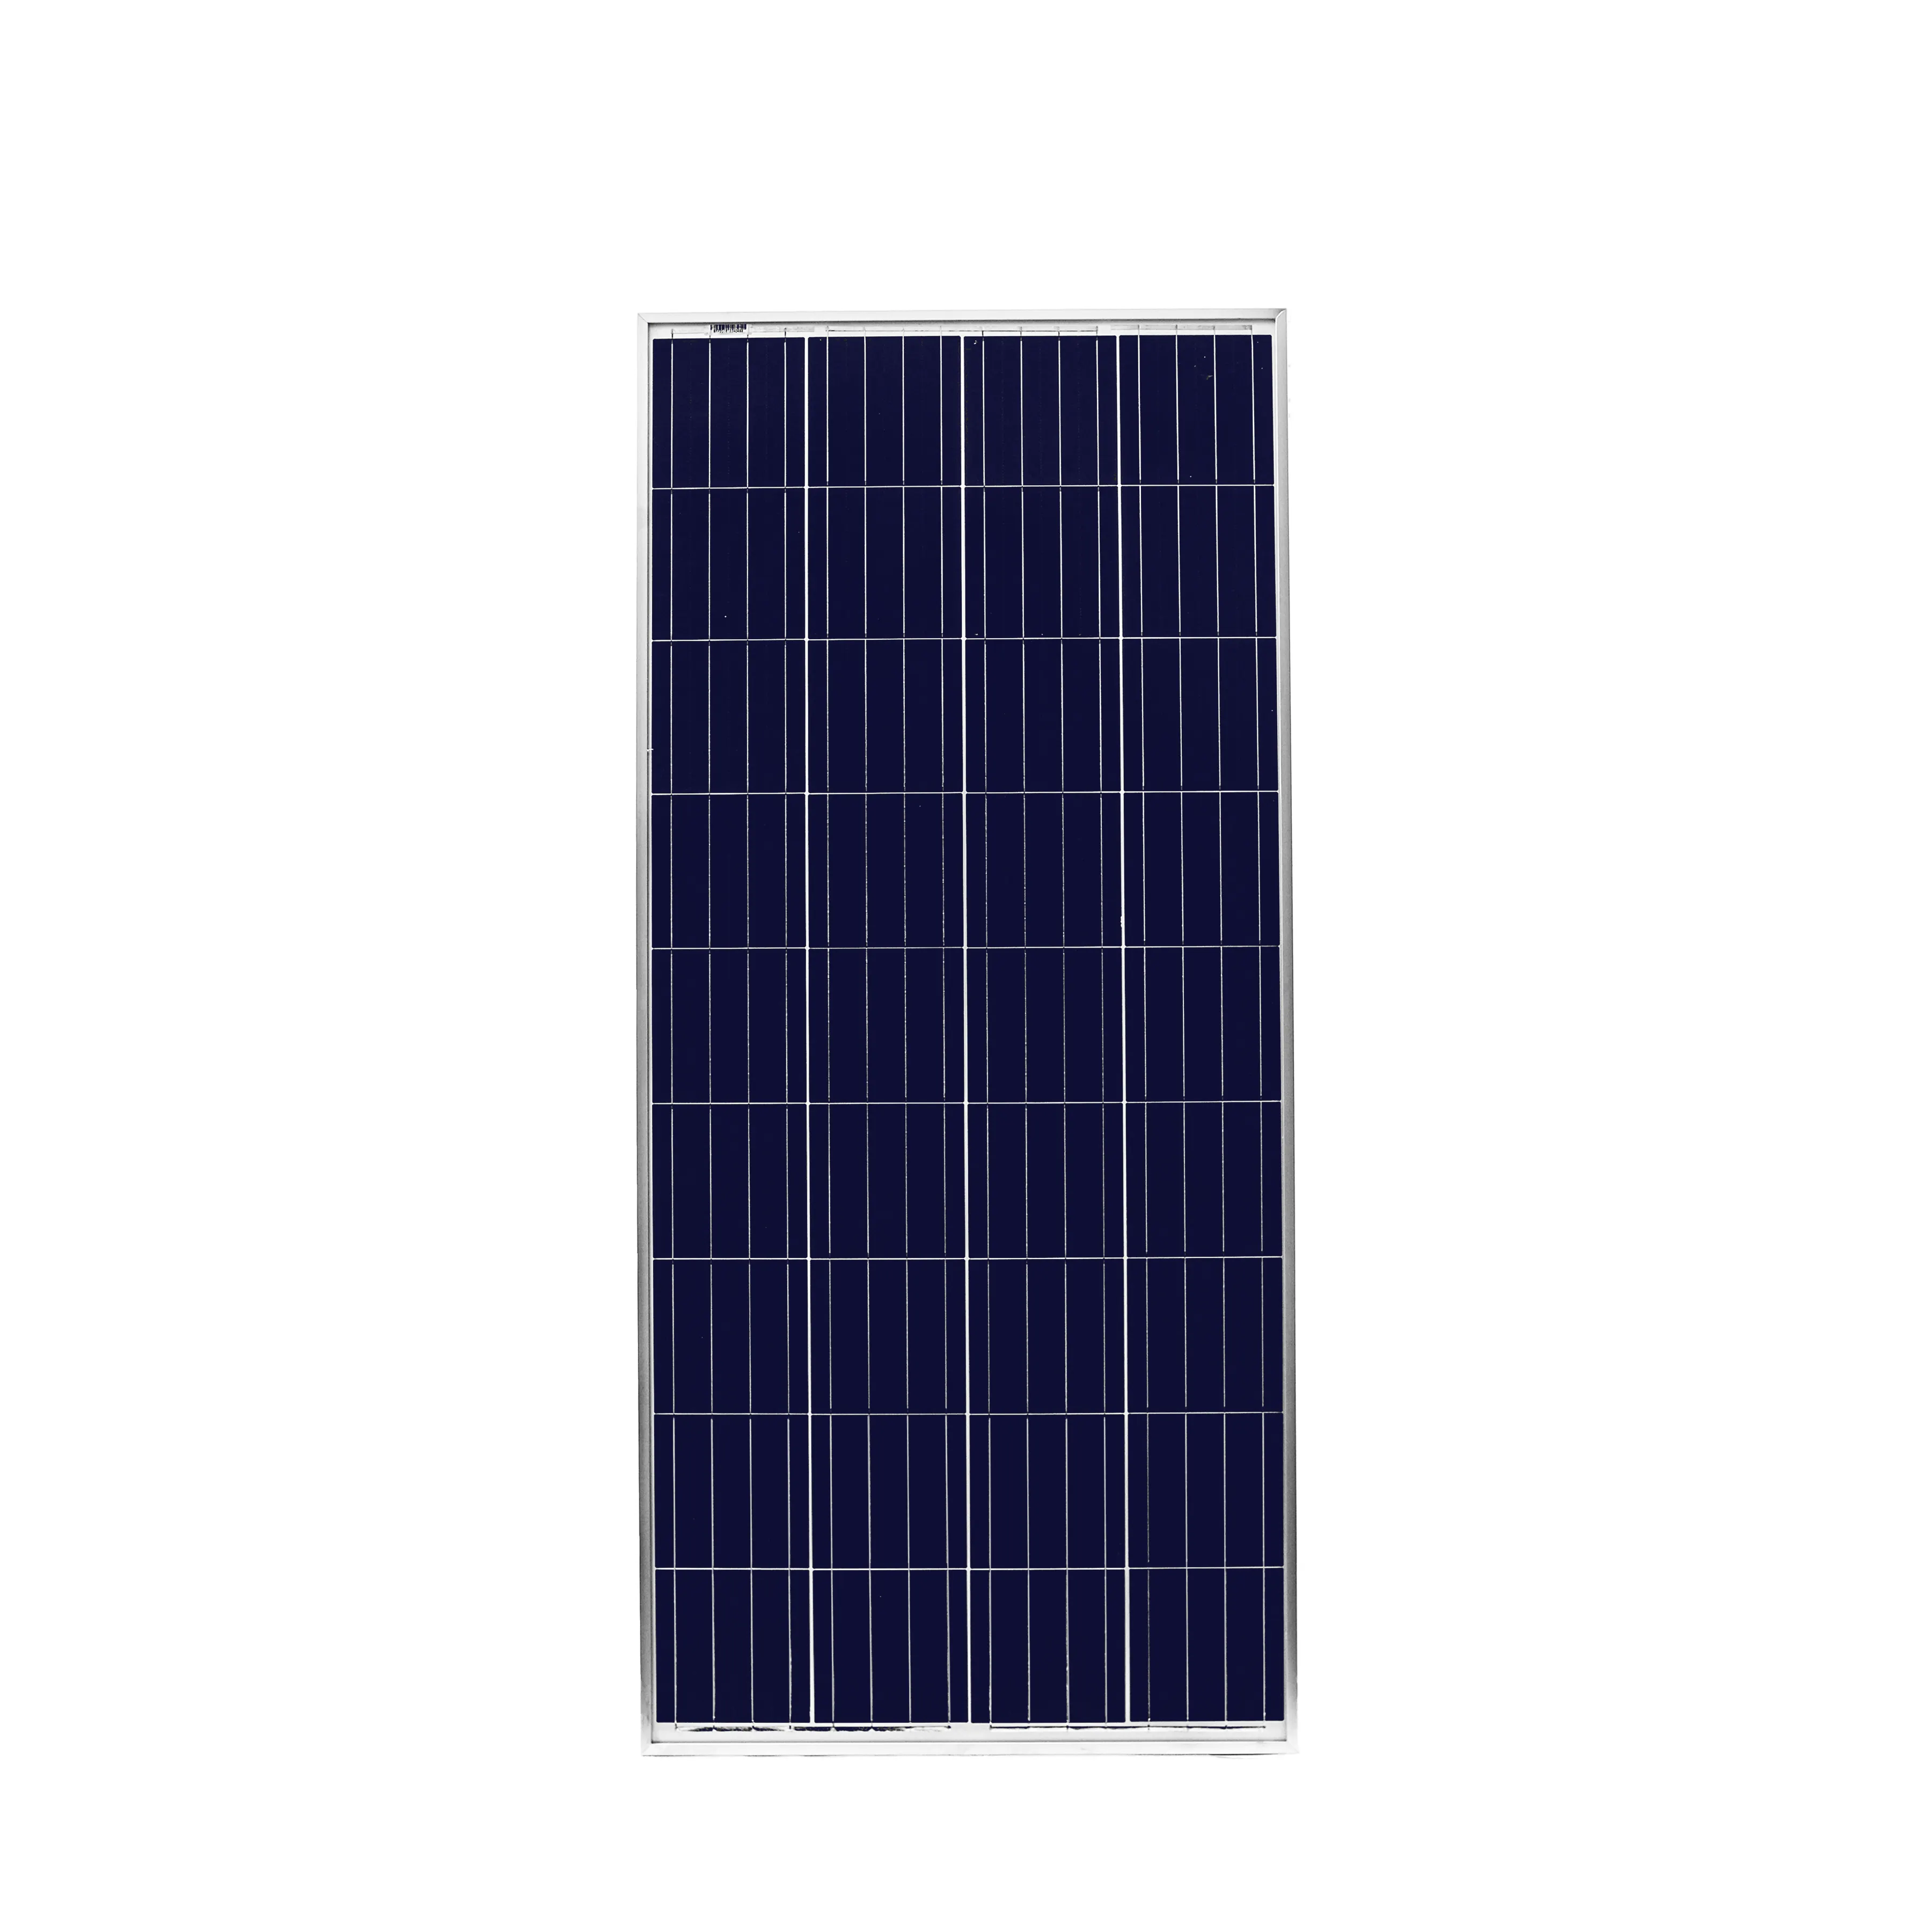 공장 직접 판매 블랙 프레임 태양 전지 패널 Paneles Solares 160